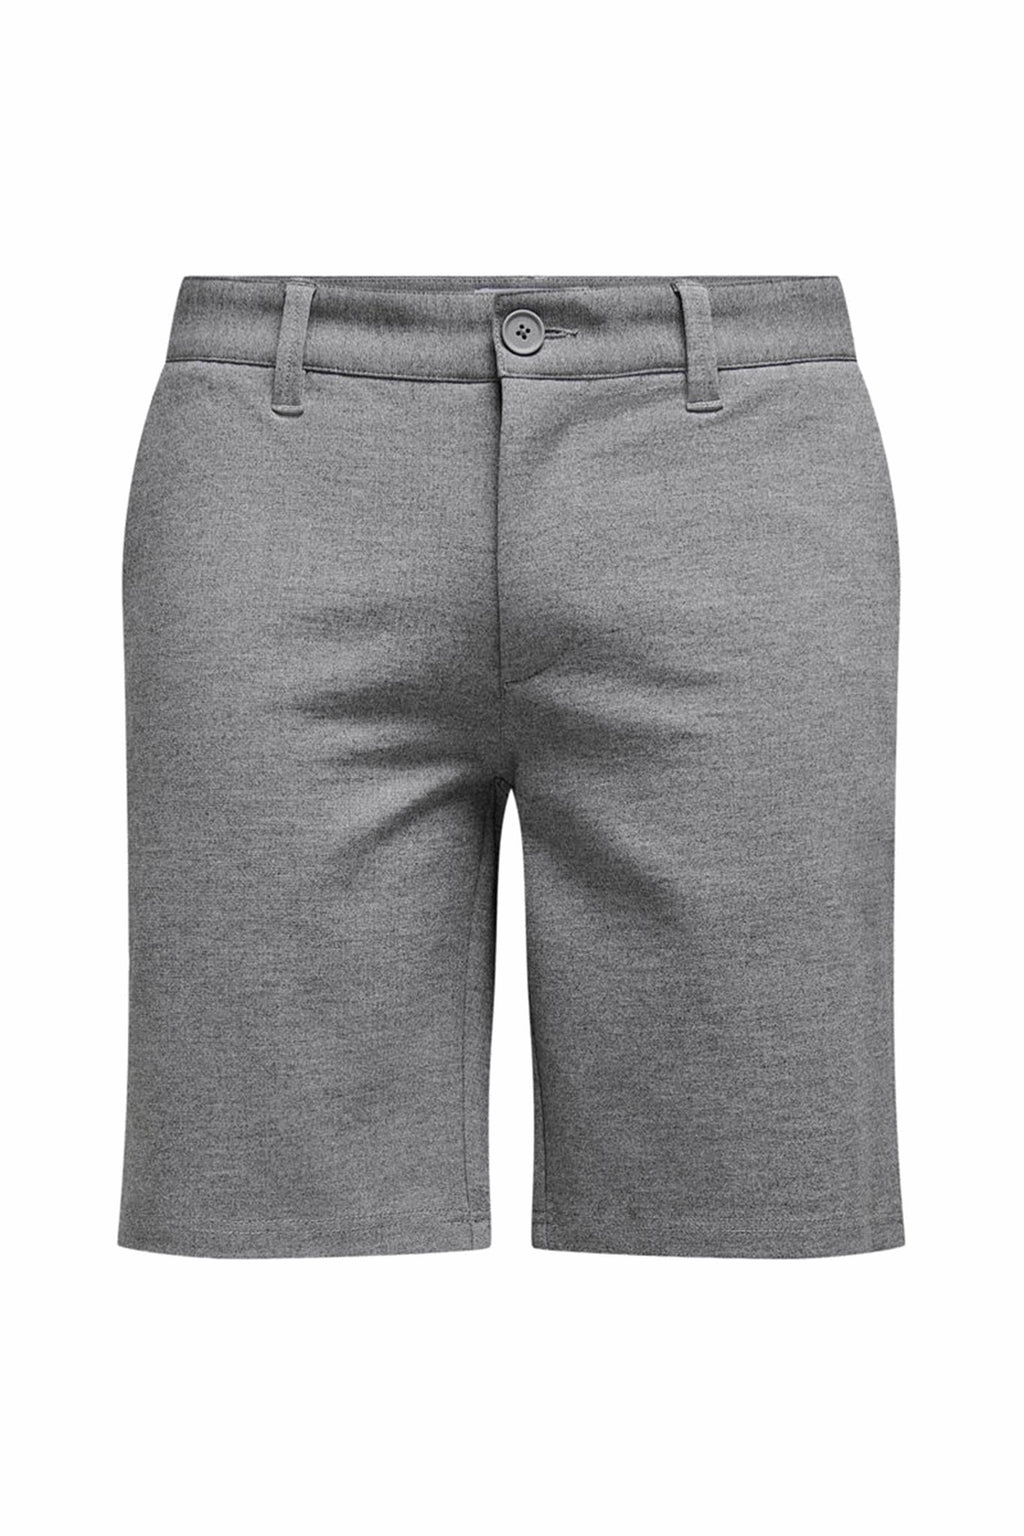 Chino Shorts - Morted Grey